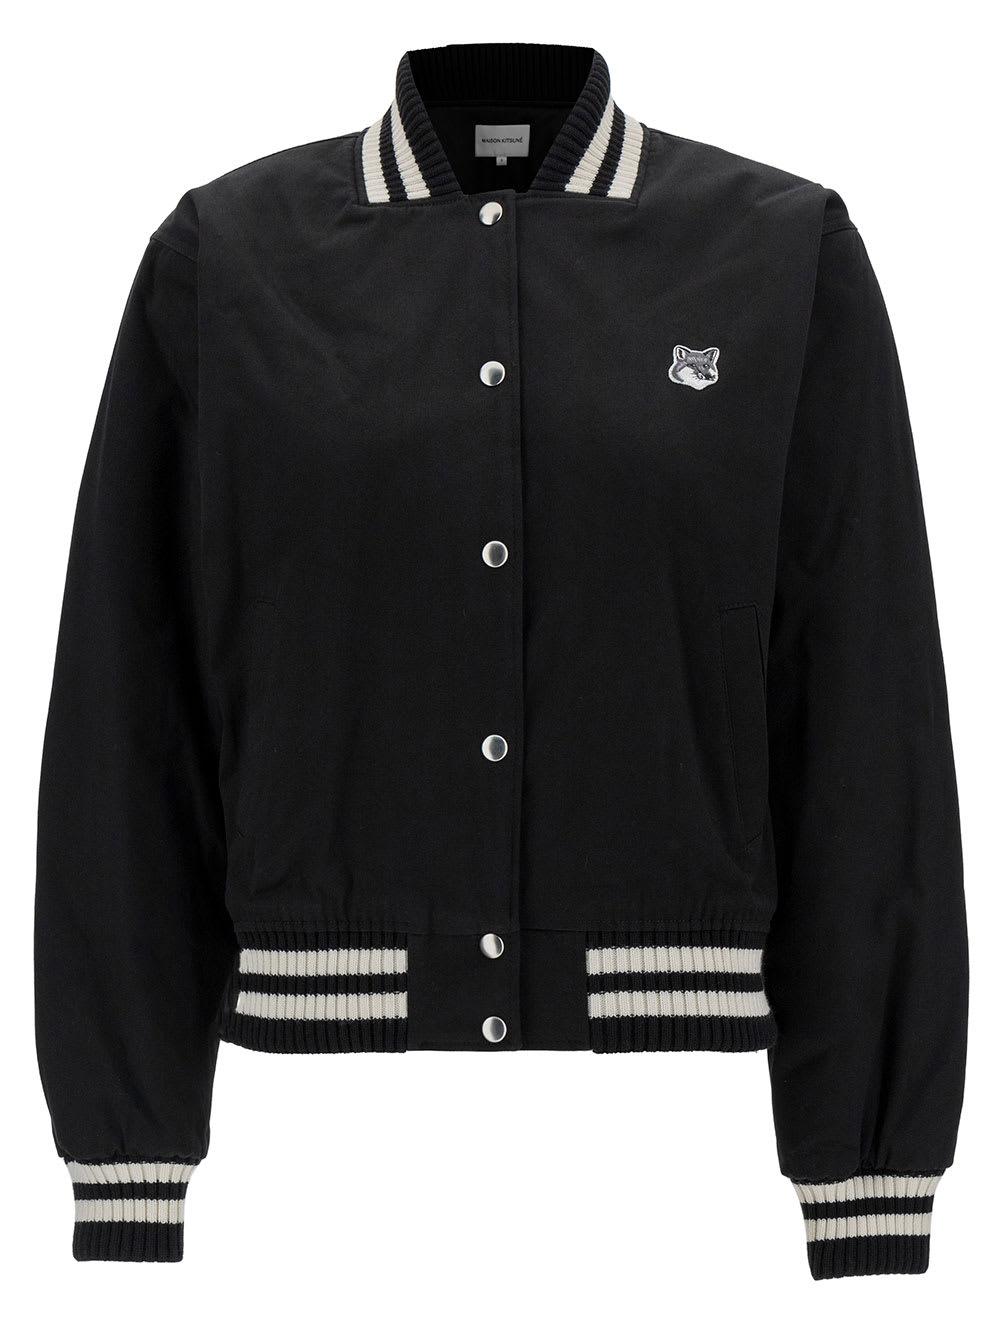 Maison Kitsuné Black Varsity Jacket With Fox Head Patch In Cotton